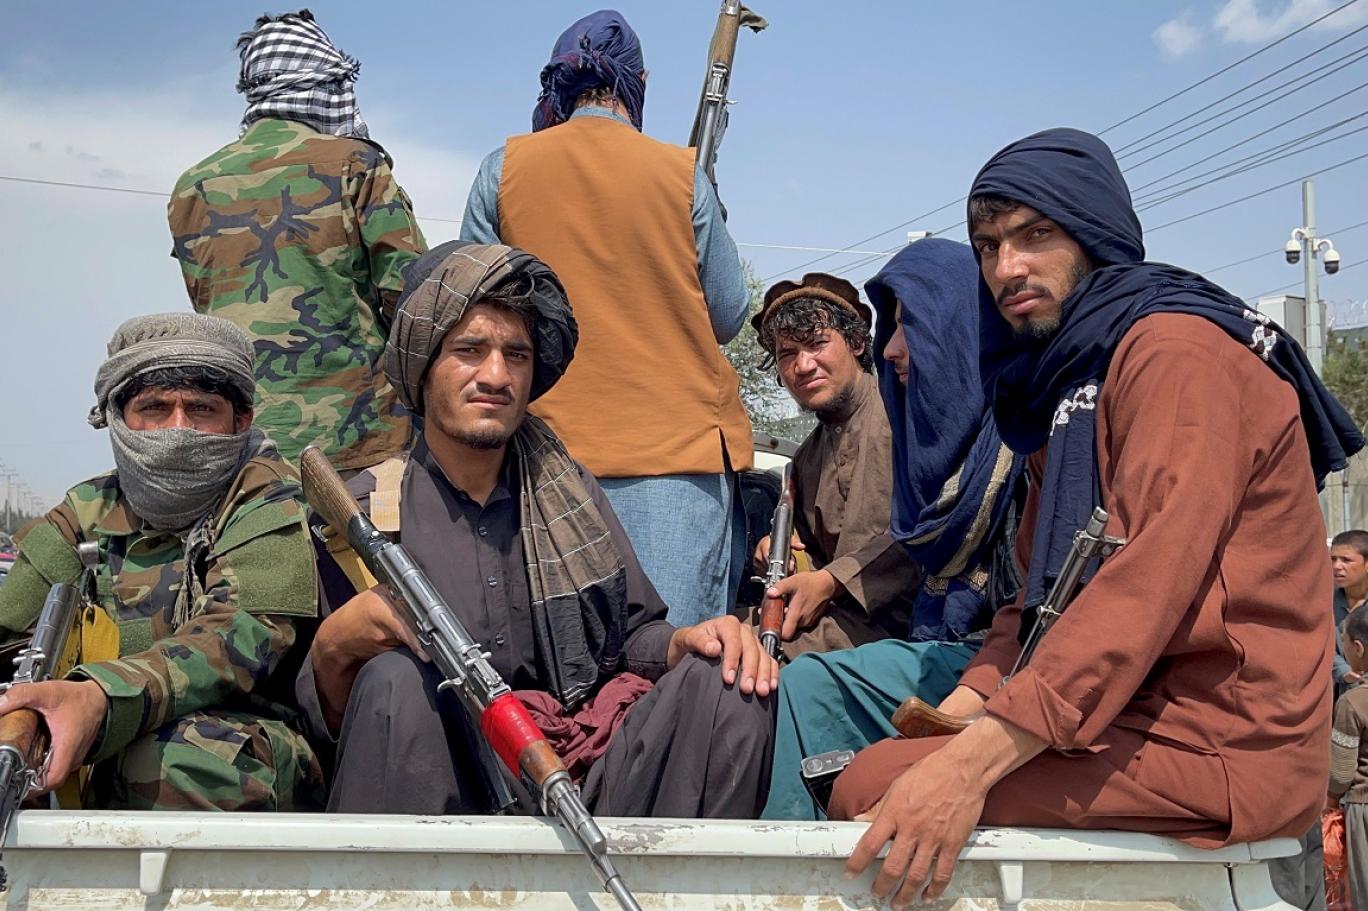 رواية من الداخل: لماذا سقطت أفغانستان؟